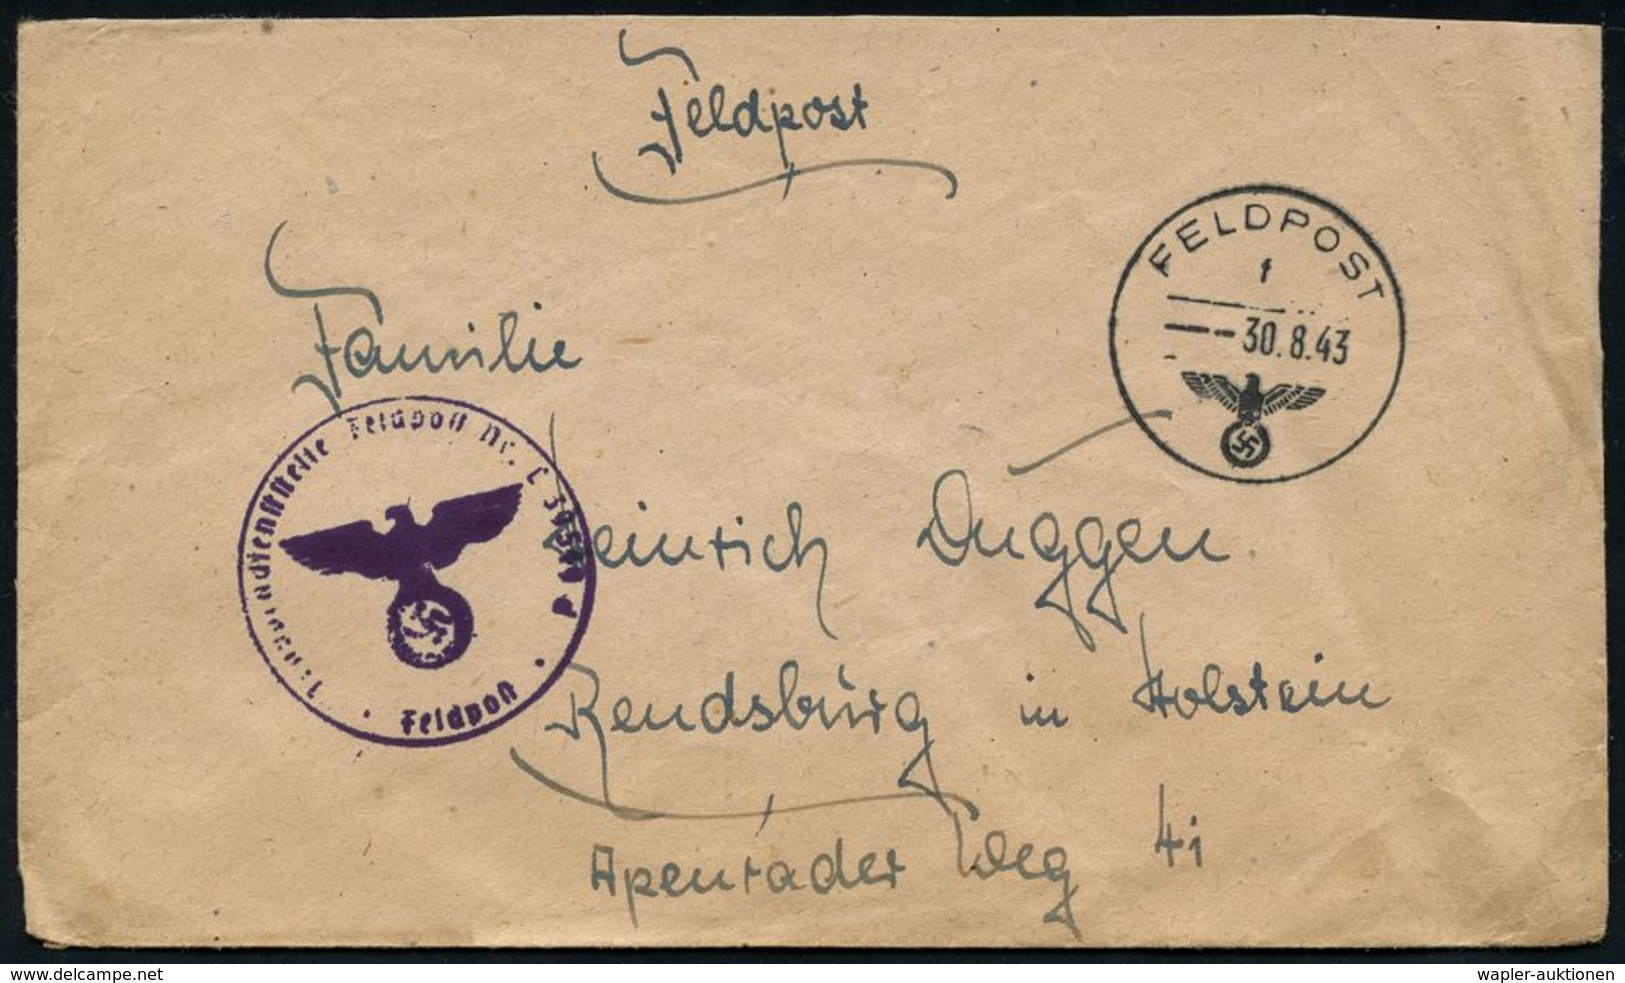 LUFTWAFFE 1939-45 / LUFTFELDPOST II.WK : DEUTSCHES REICH 1942/44 3 Verschiedene Briefstempel Fp.-Nr.: L 36959 Bzw. L 395 - Avions